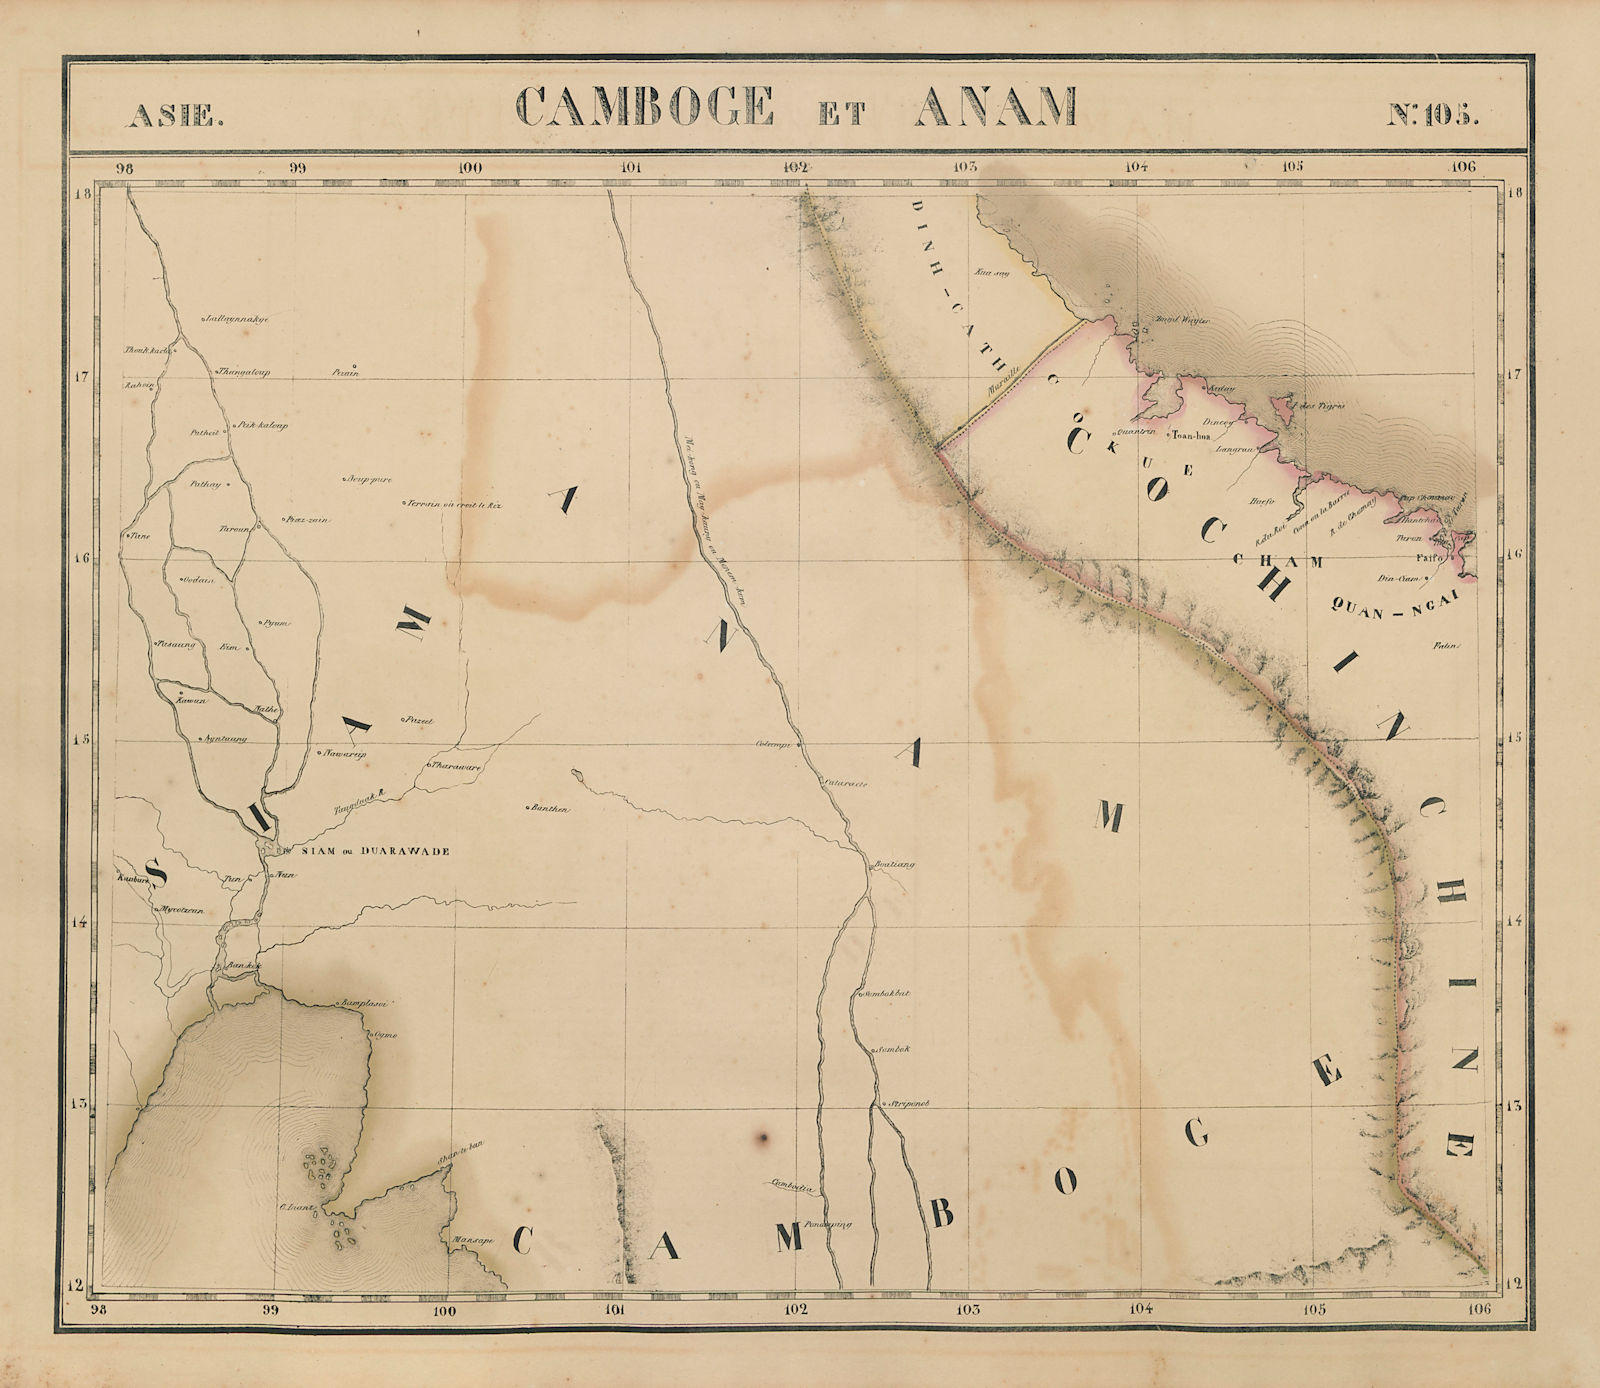 Asie. Camboge & Anam #105 Indochina Thailand Cambodia Laos VANDERMAELEN 1827 map